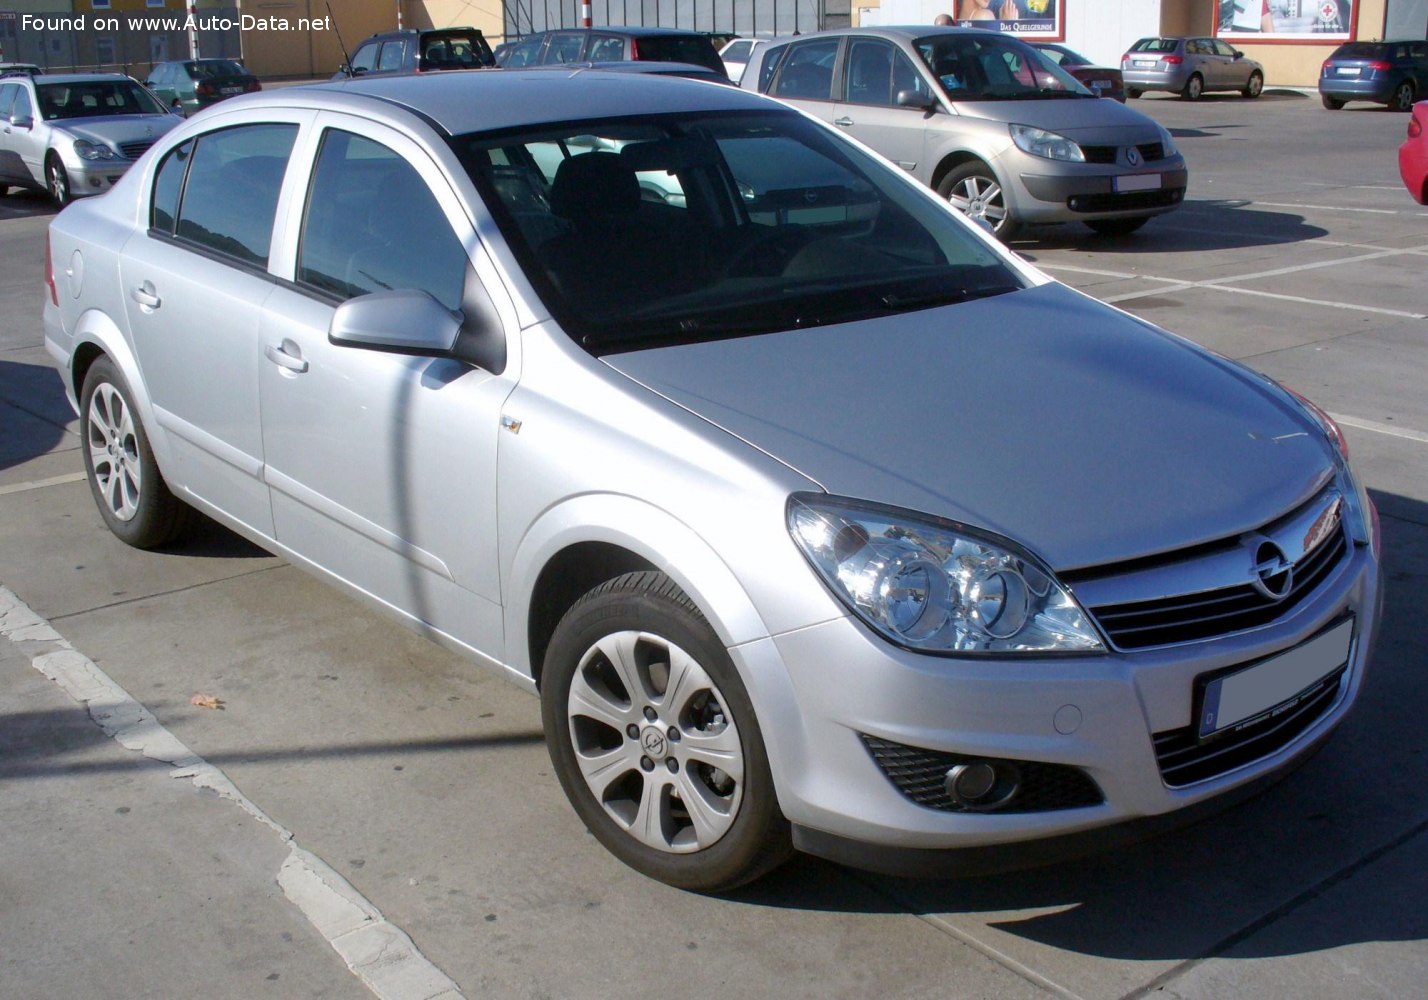 2007 Opel Astra H Sedan 1.7 CDTI (101 CH)  Fiche technique, consommation  de carburant , Dimensions